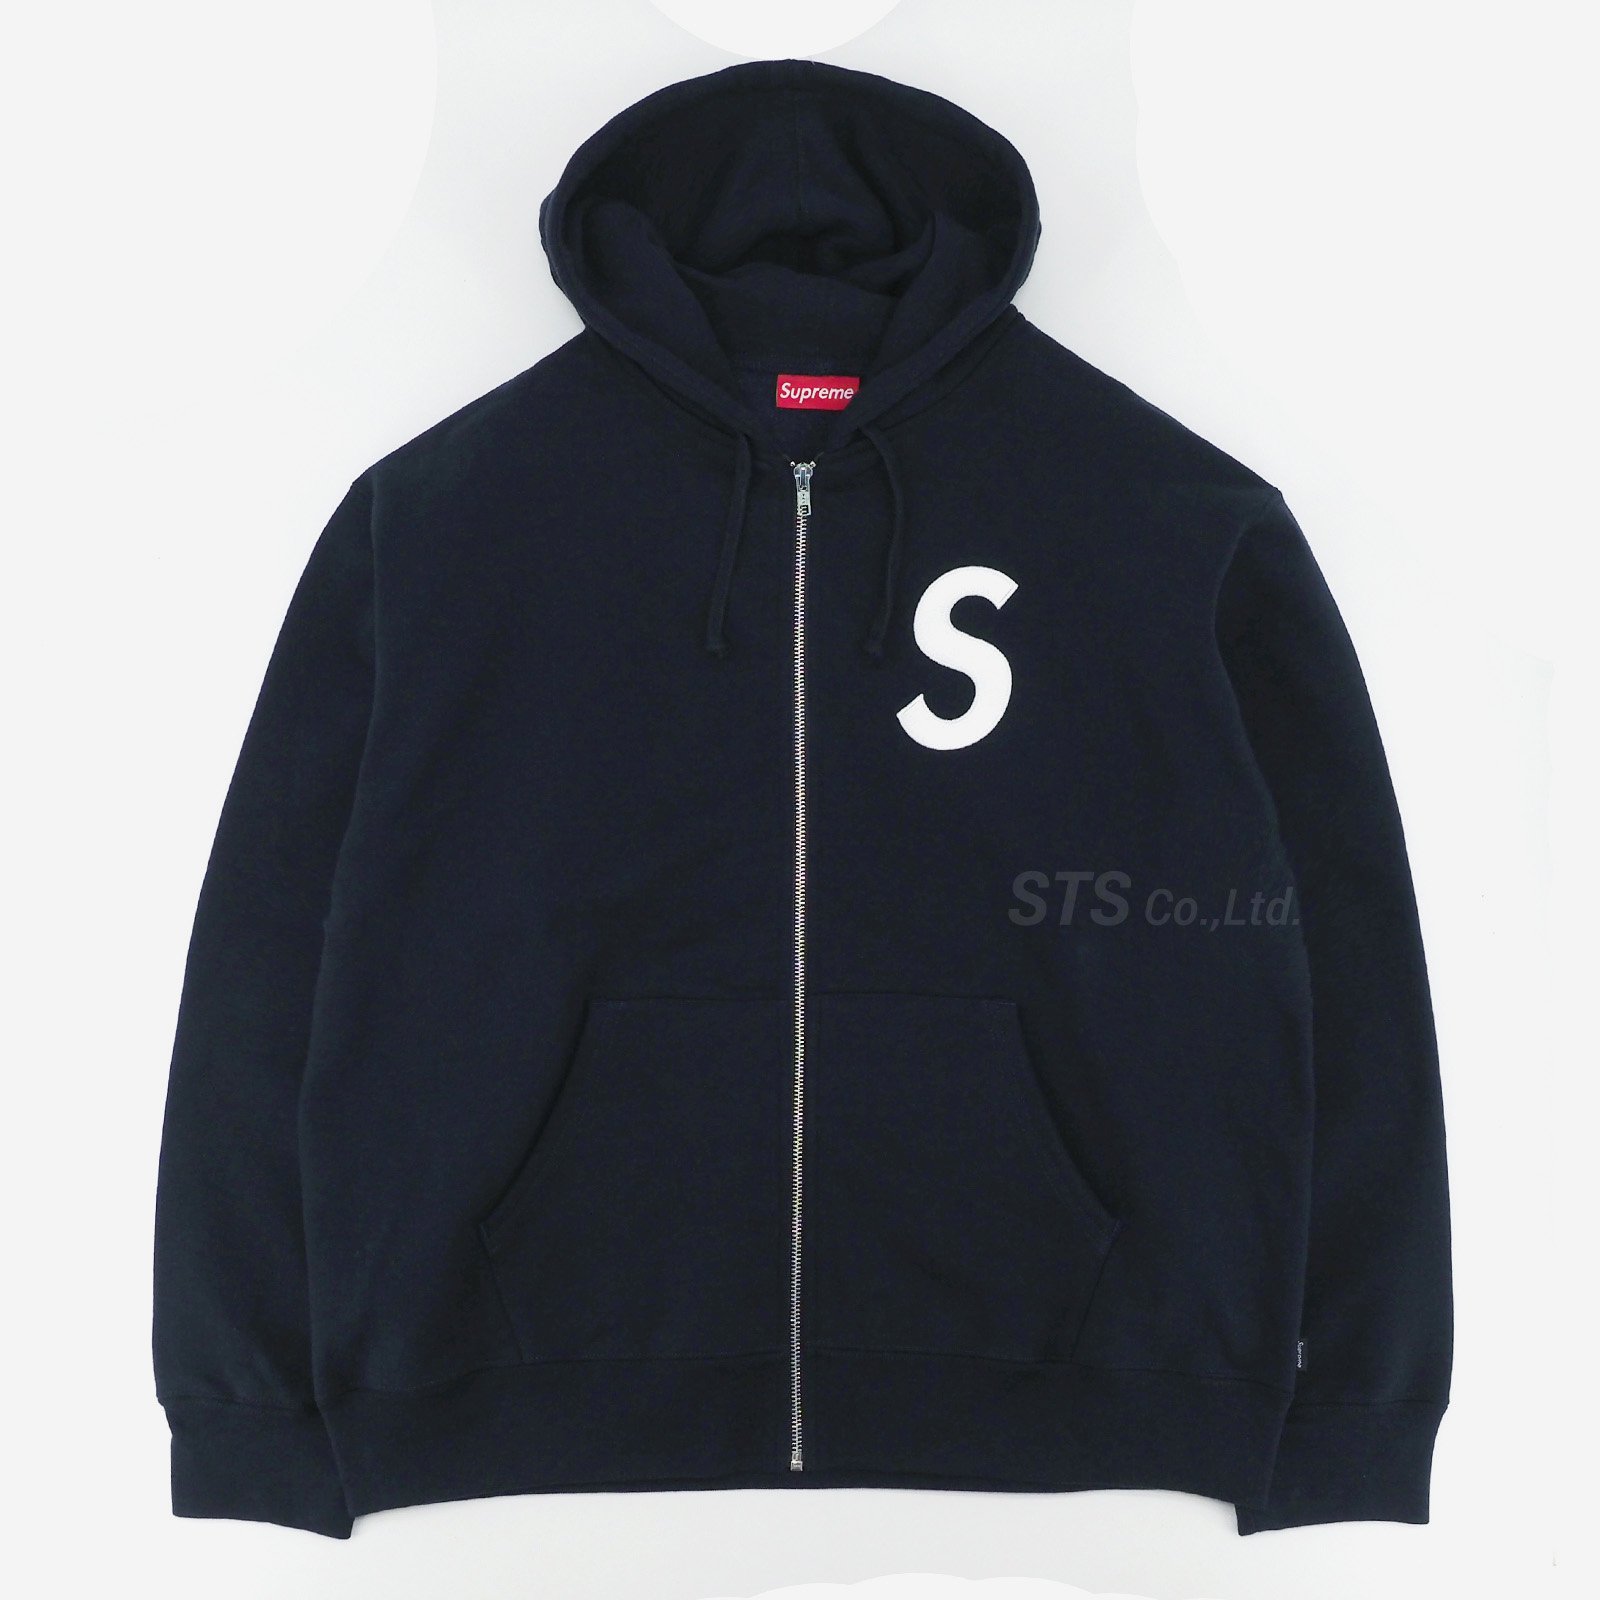 S Logo Zip Up Hooded Sweatshirt SupremeサイズL